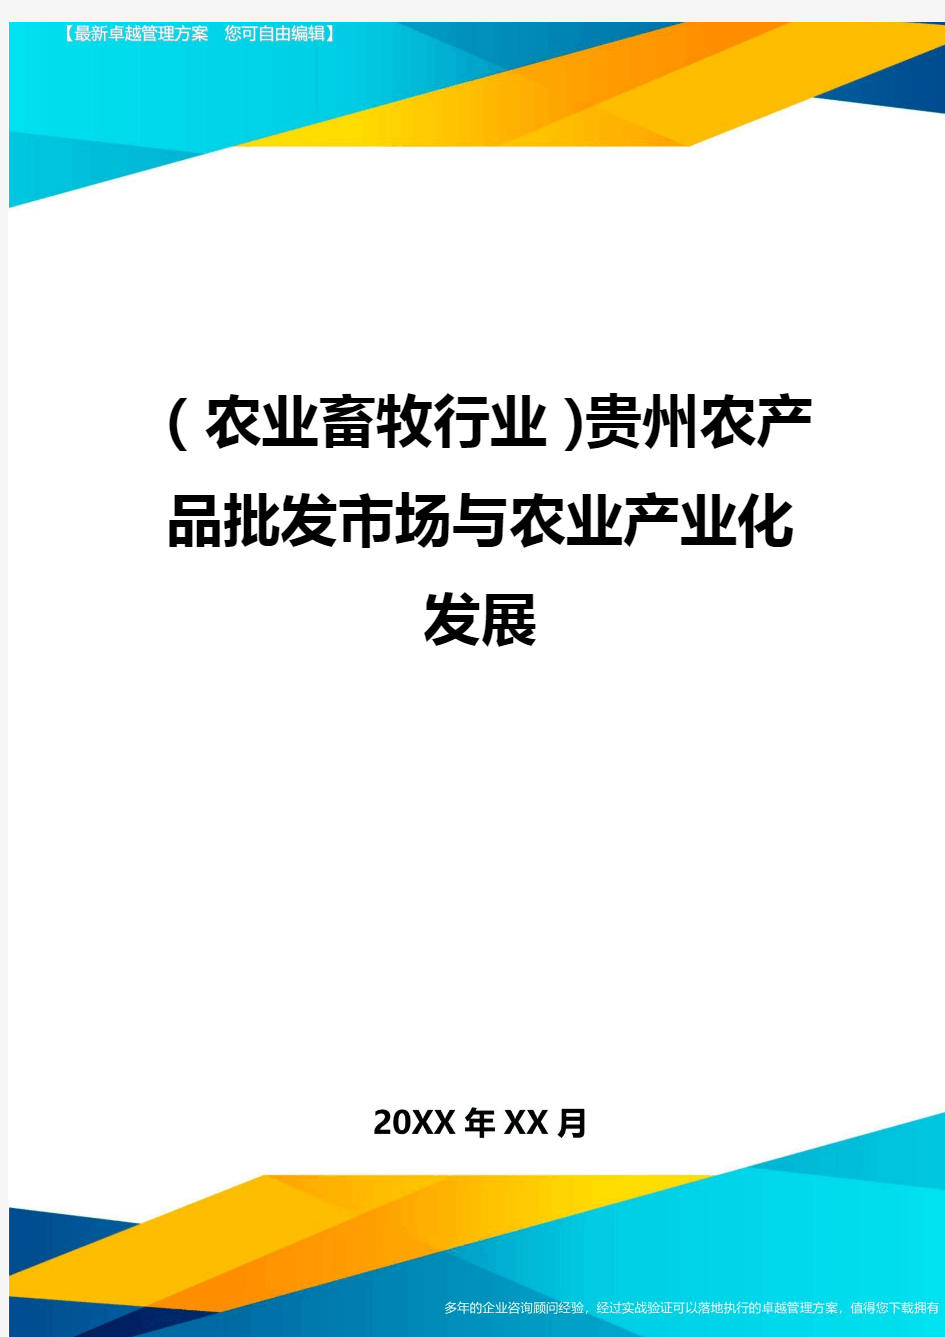 (2020年)(农业畜牧行业)贵州农产品批发市场与农业产业化发展精编